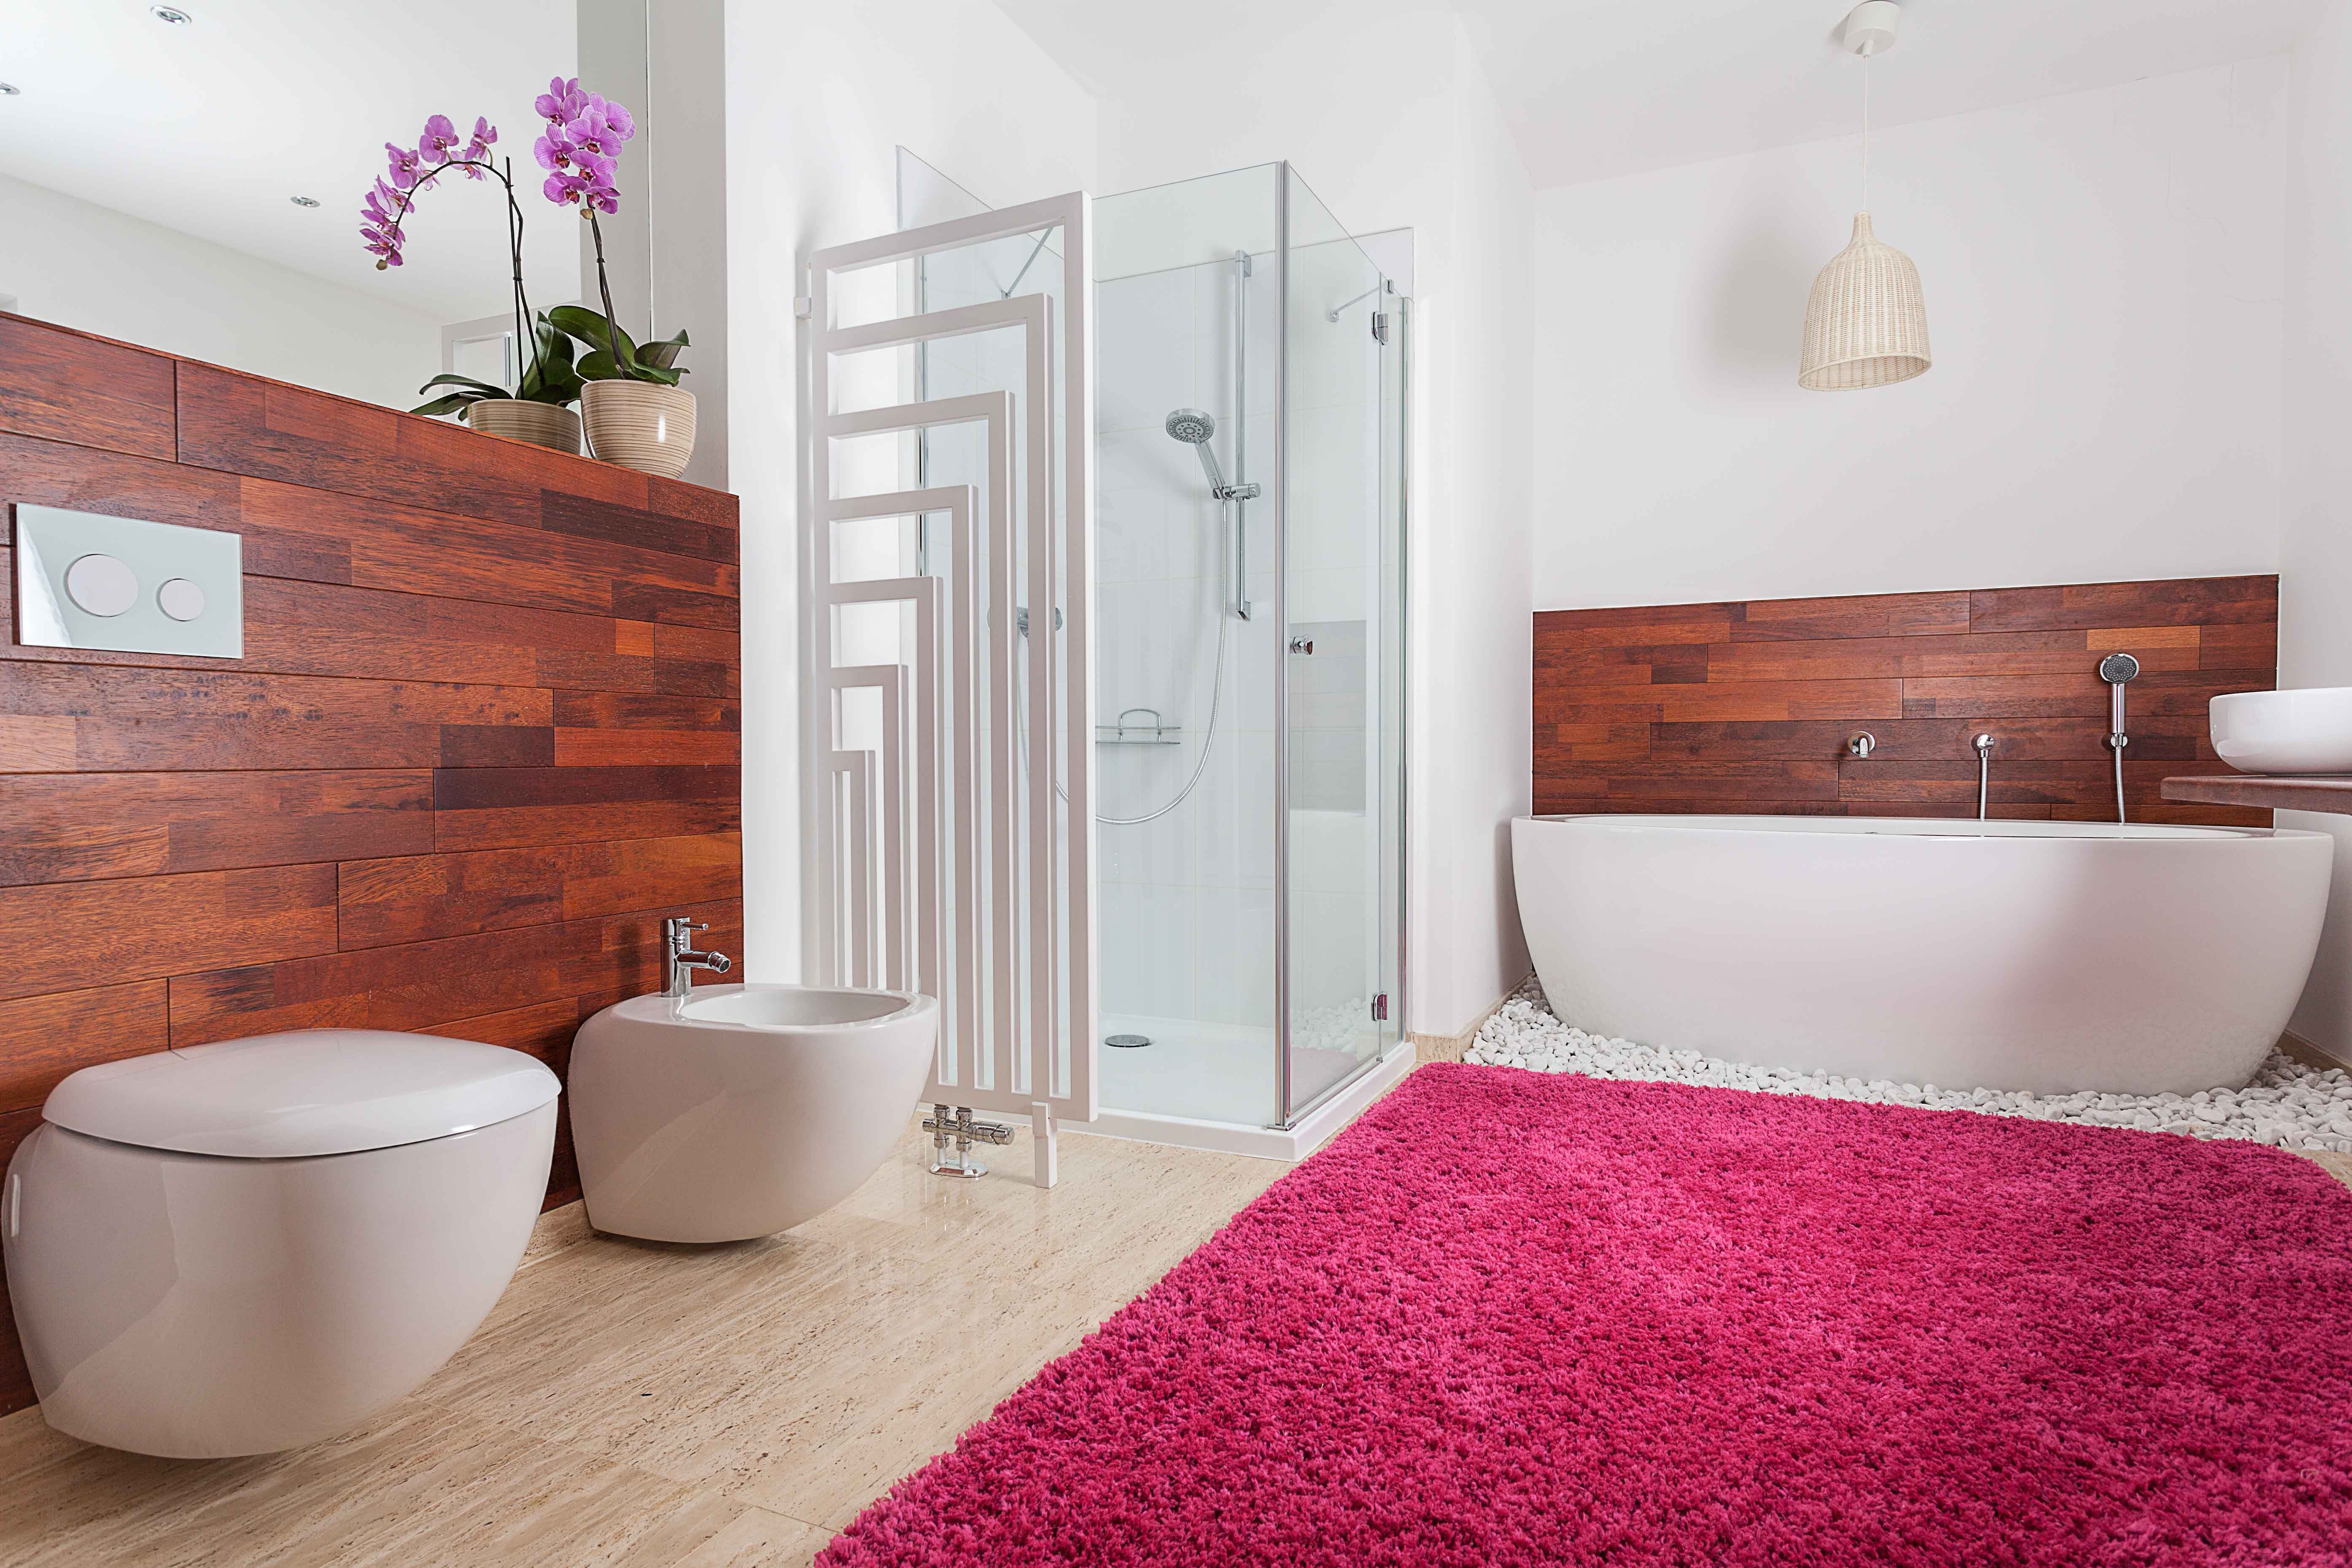 bathroom designs-bathroom rugs-bath rug-bright rug-red bathroom rug